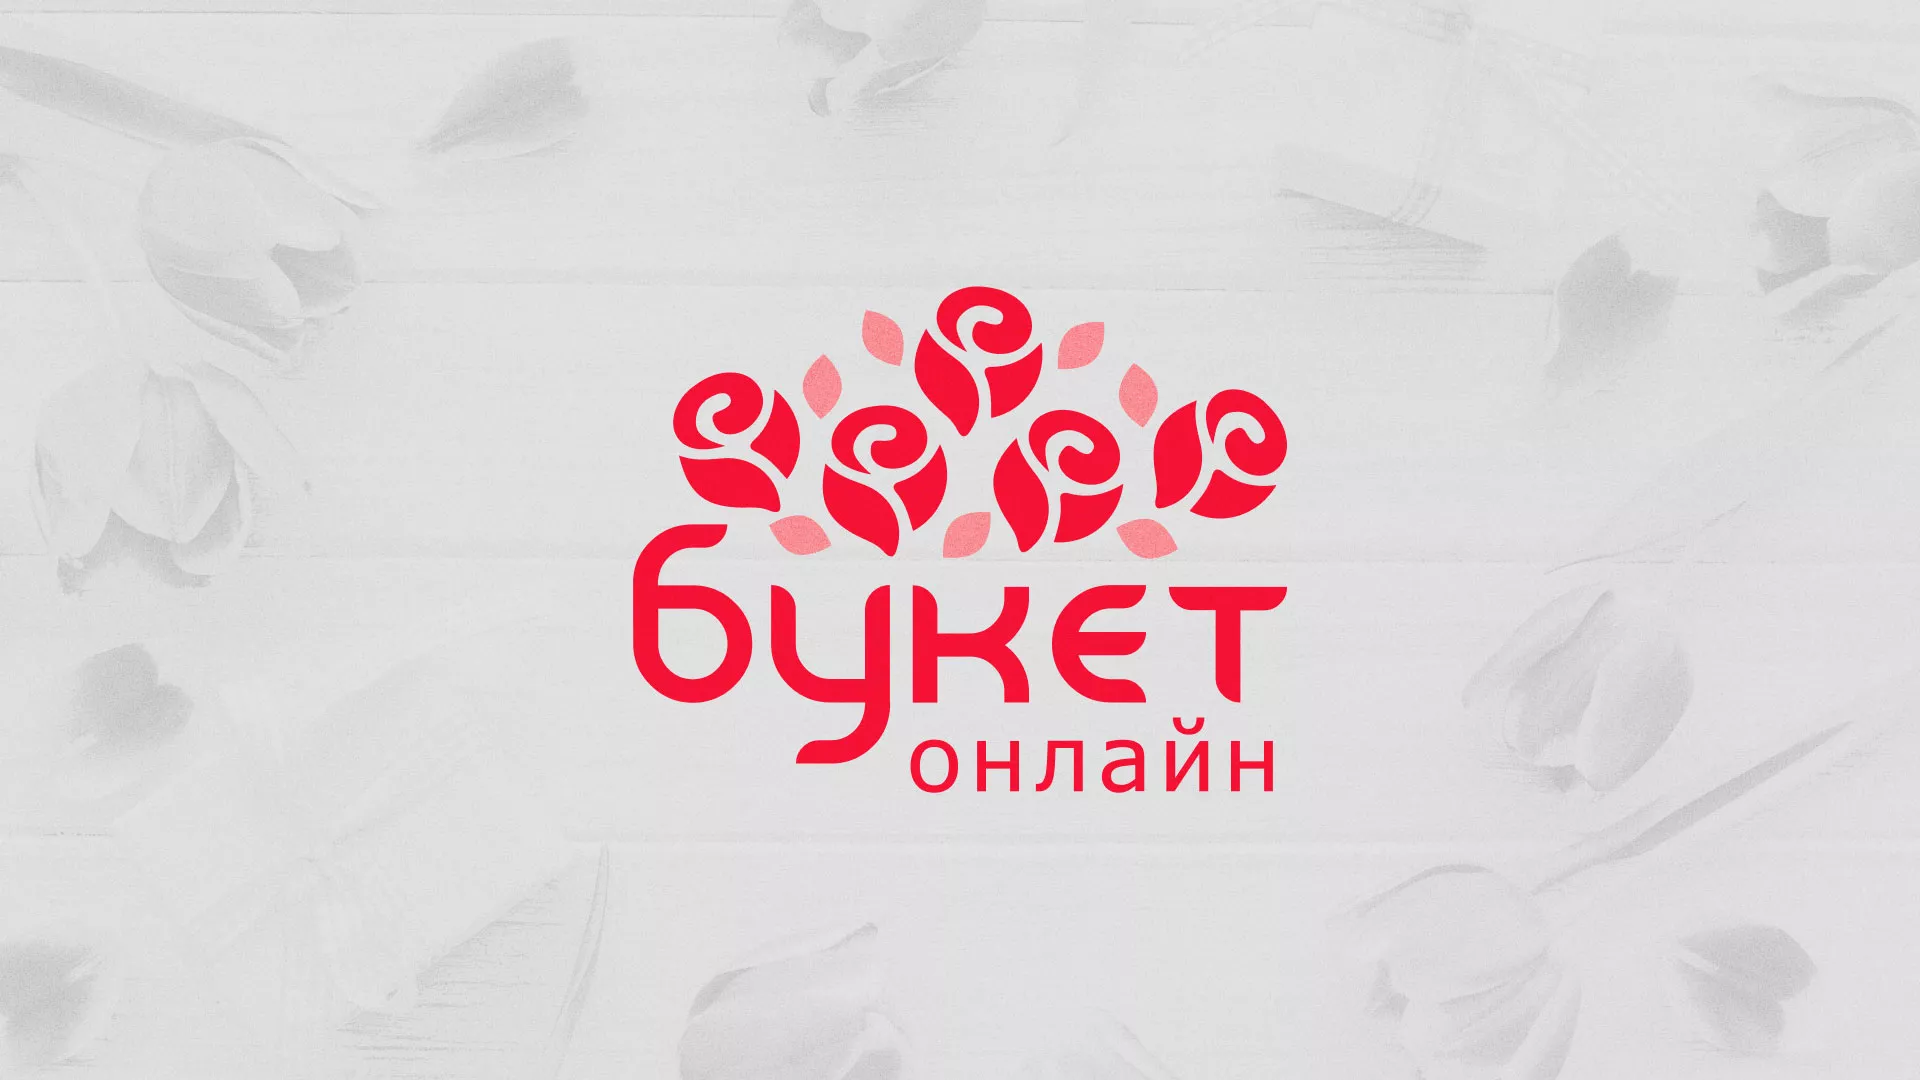 Создание интернет-магазина «Букет-онлайн» по цветам в Раменском